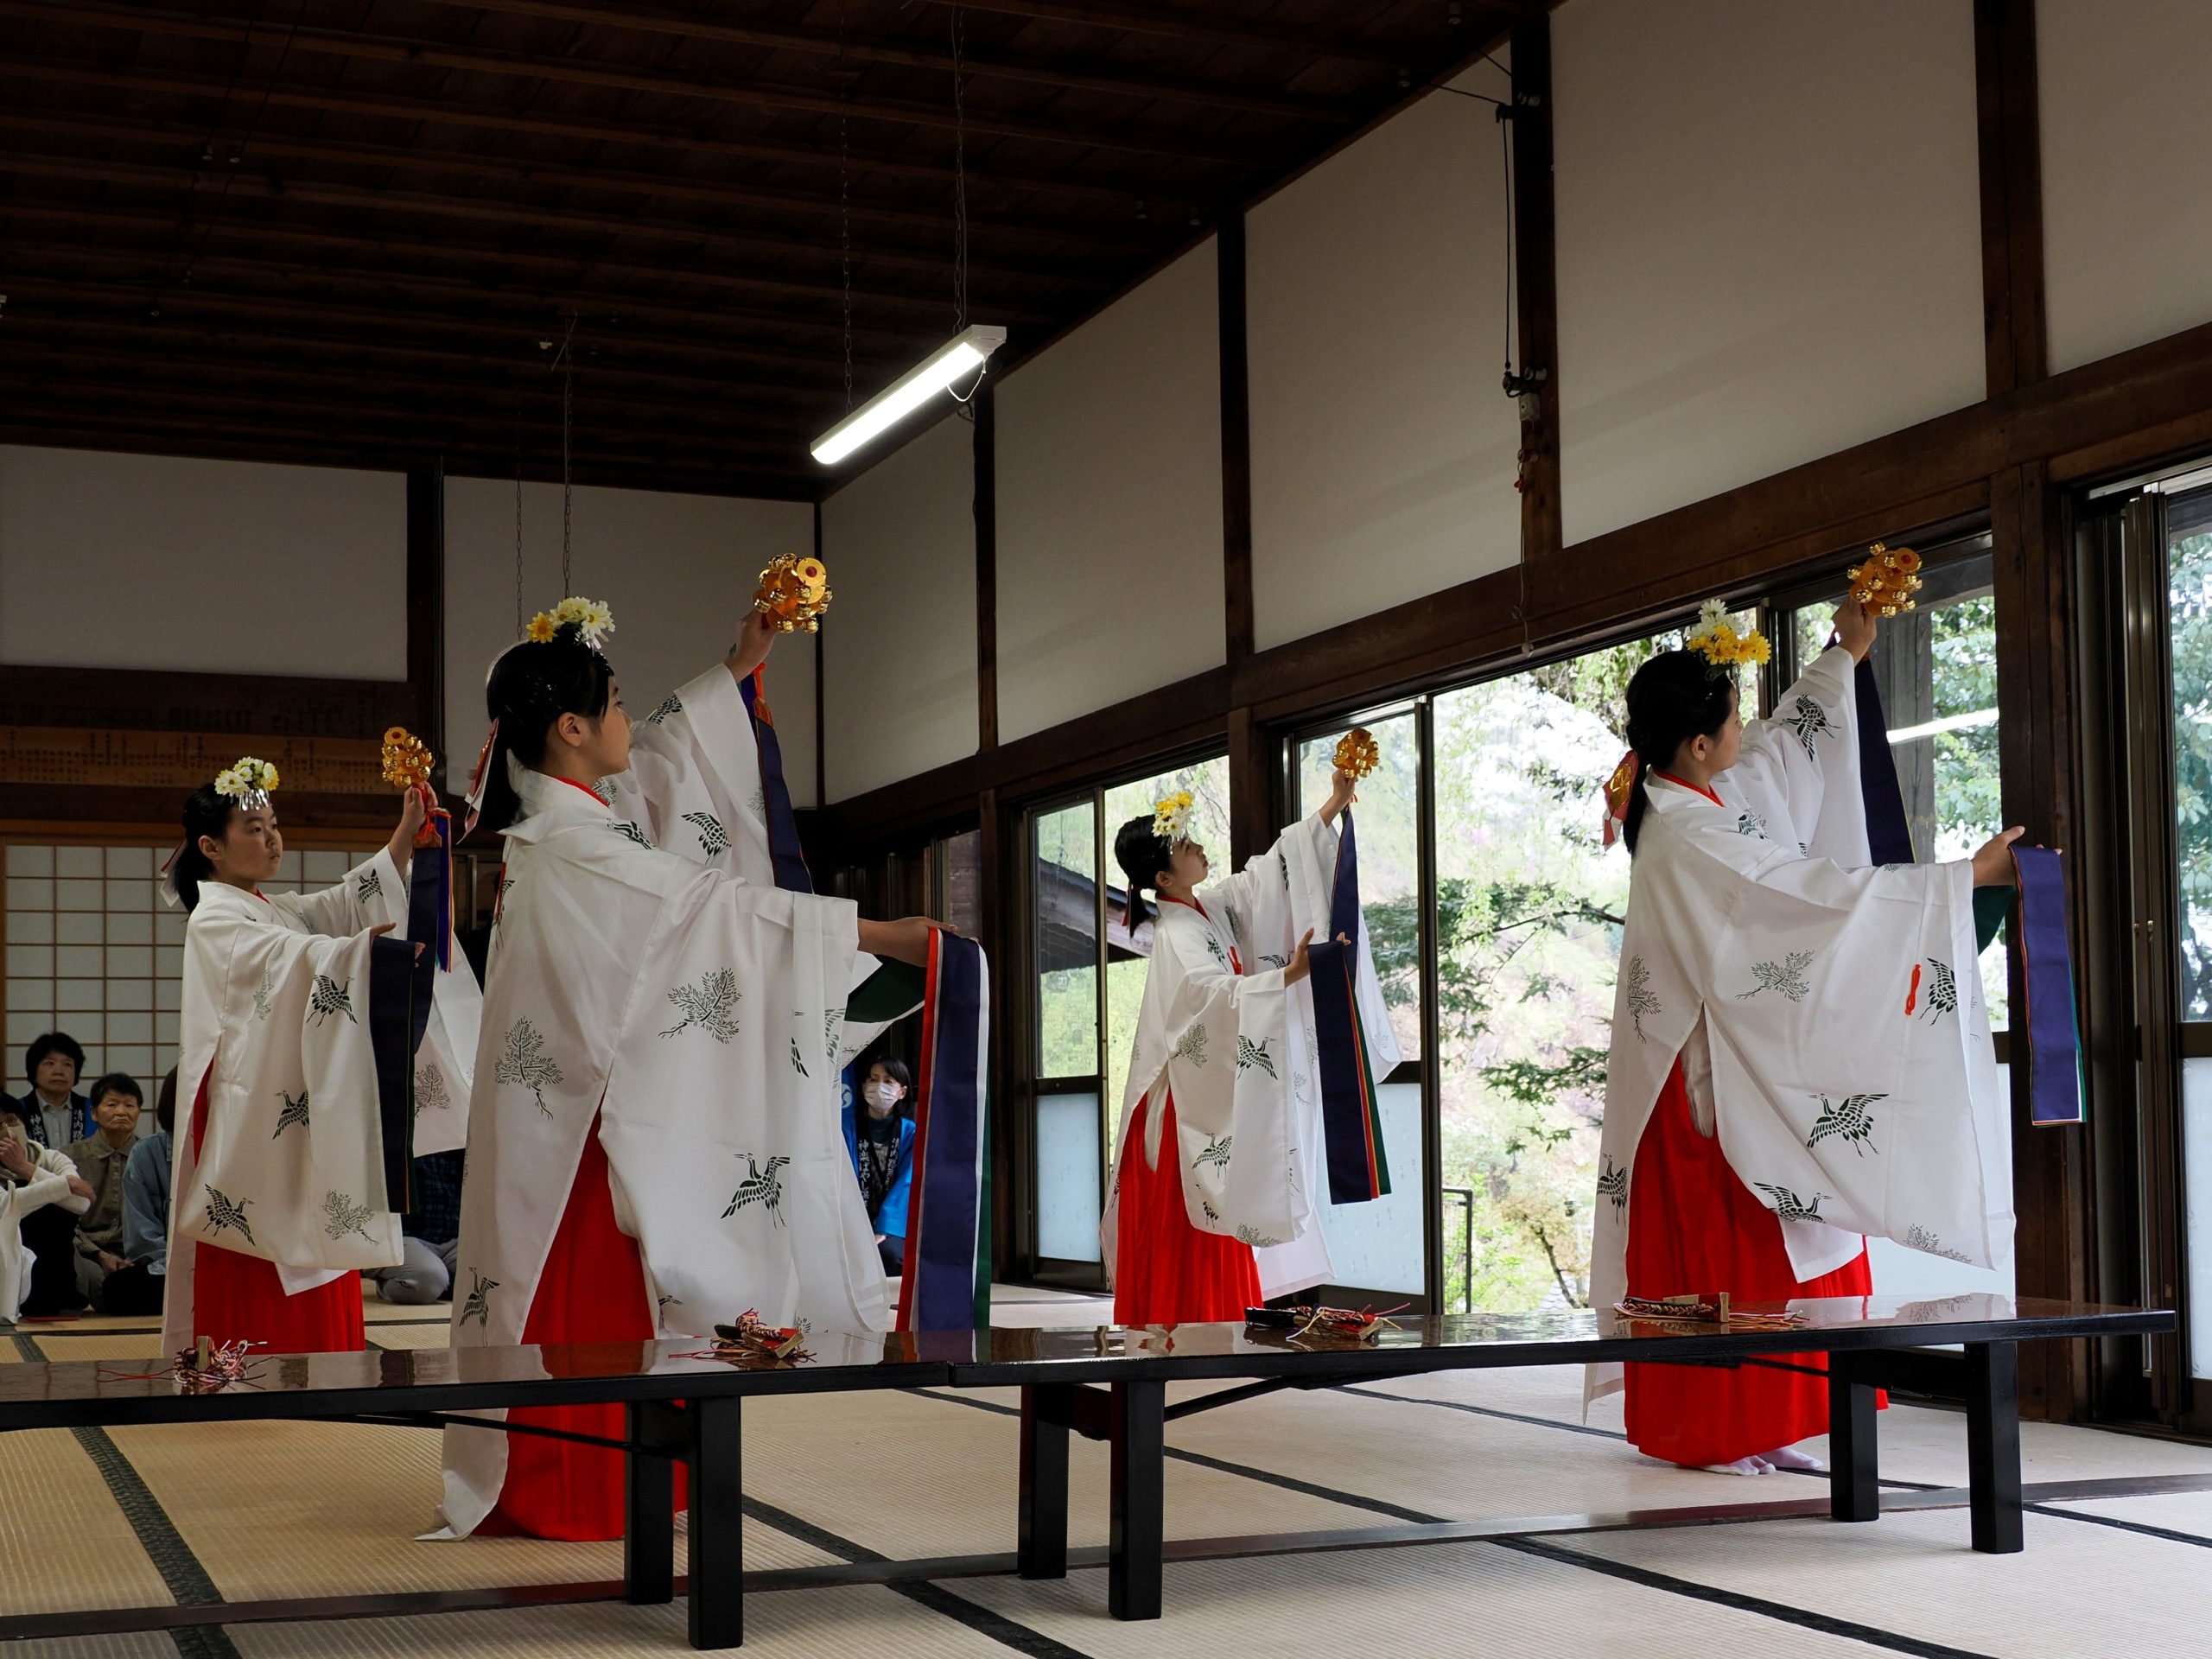 下清内路諏訪神社の春祭りが開催されました